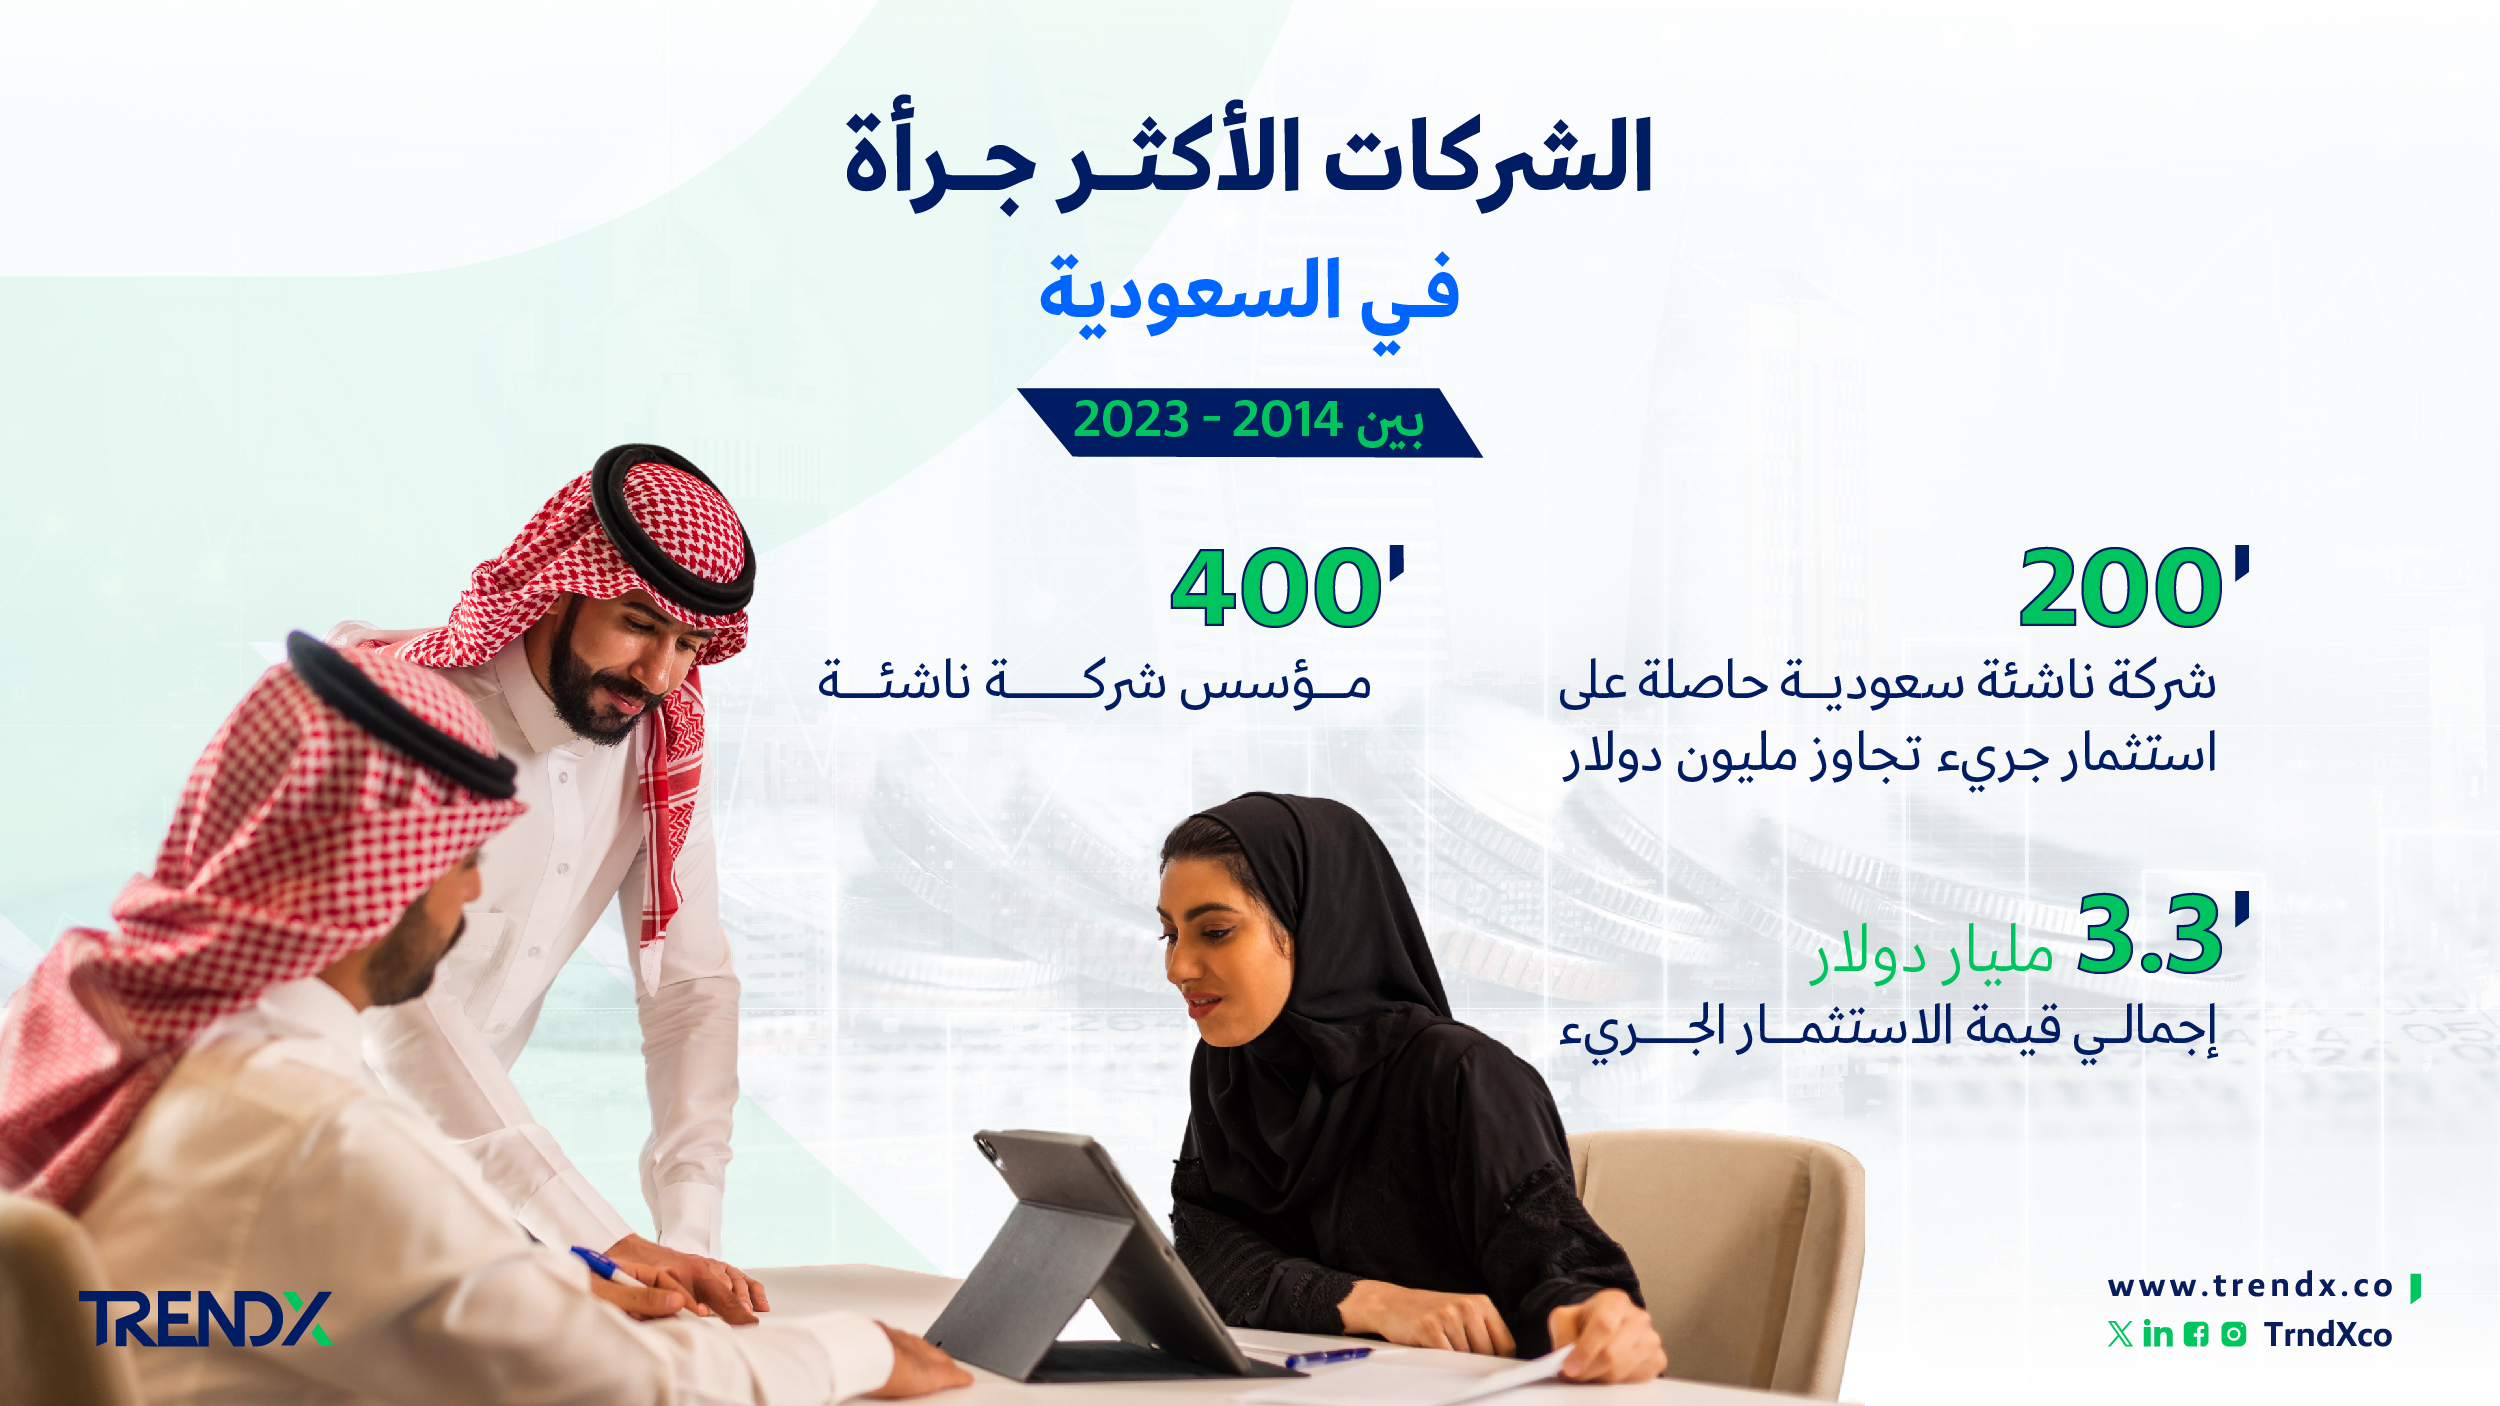 الشركات الأكثر جرأة في السعودية ثروات السعوديين في الفترة من عام 2000 إلى 2022 01